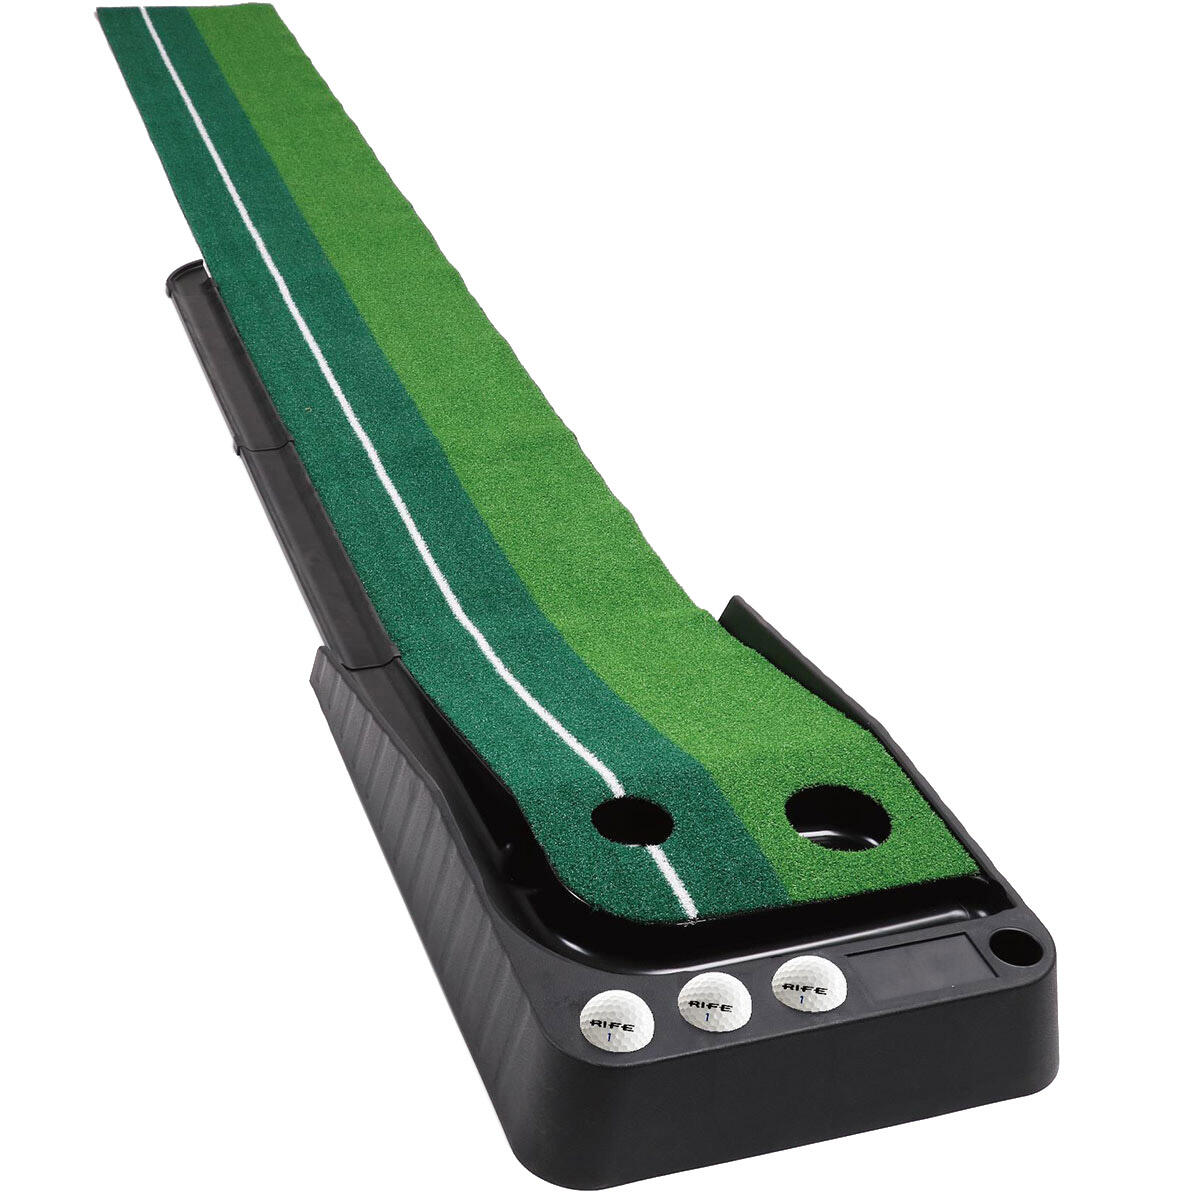 Rife Golf Putting Mat Deluxe Edition Lightweight Green 1/4